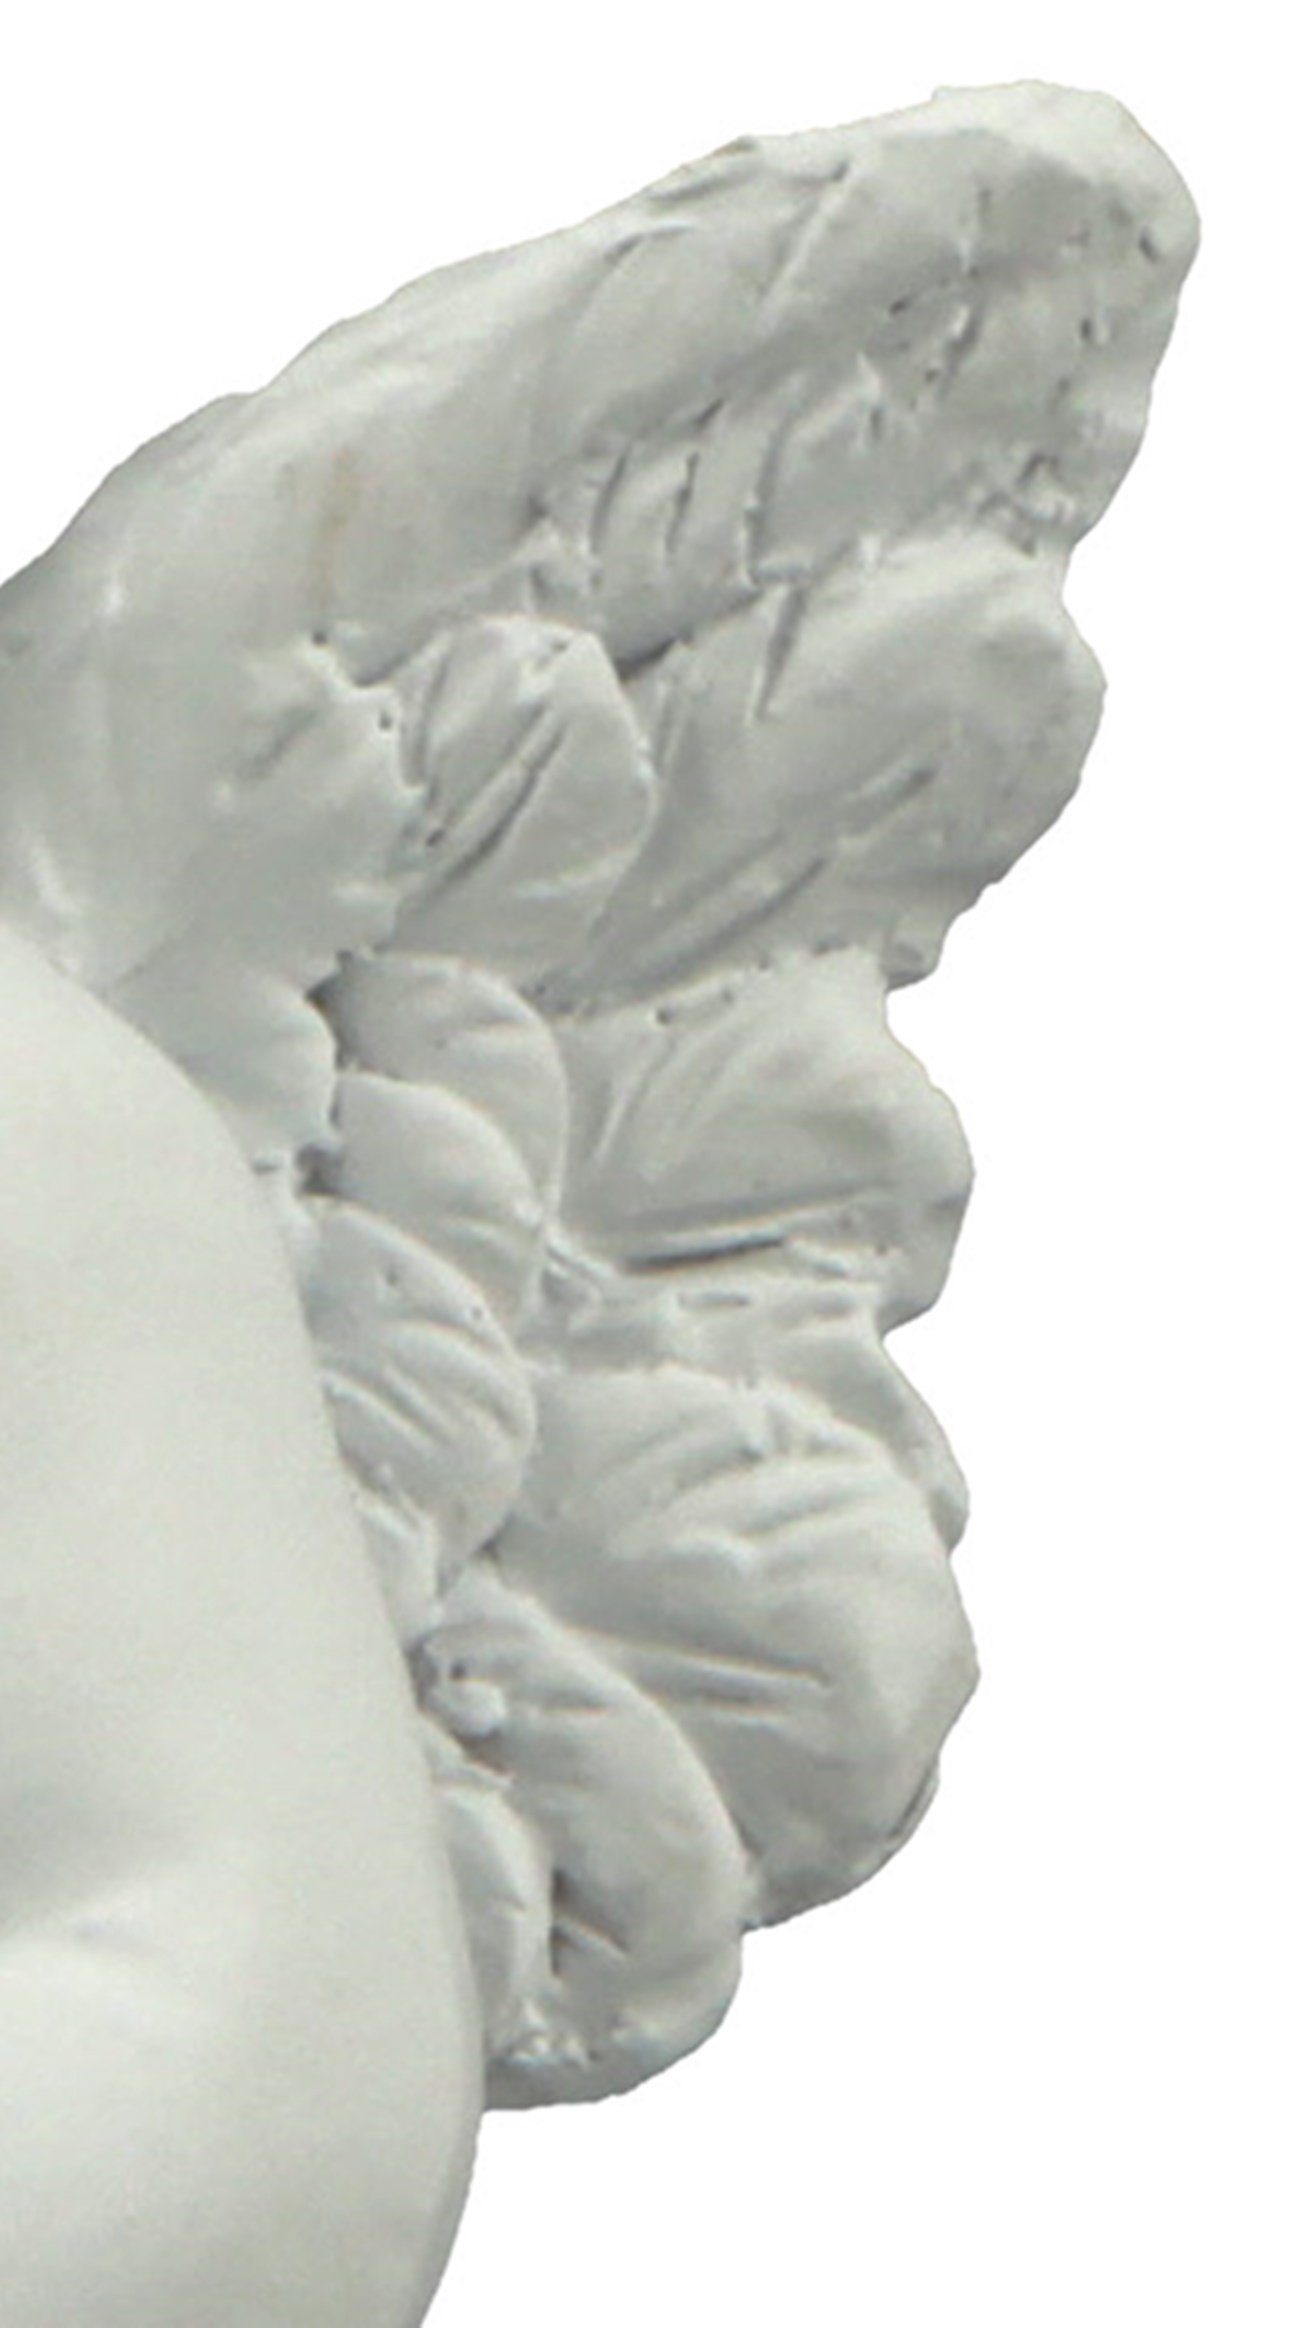 dekojohnson Gartenfigur Grabengel sitzend Grab-Deko 6x6x8cm weiß klein